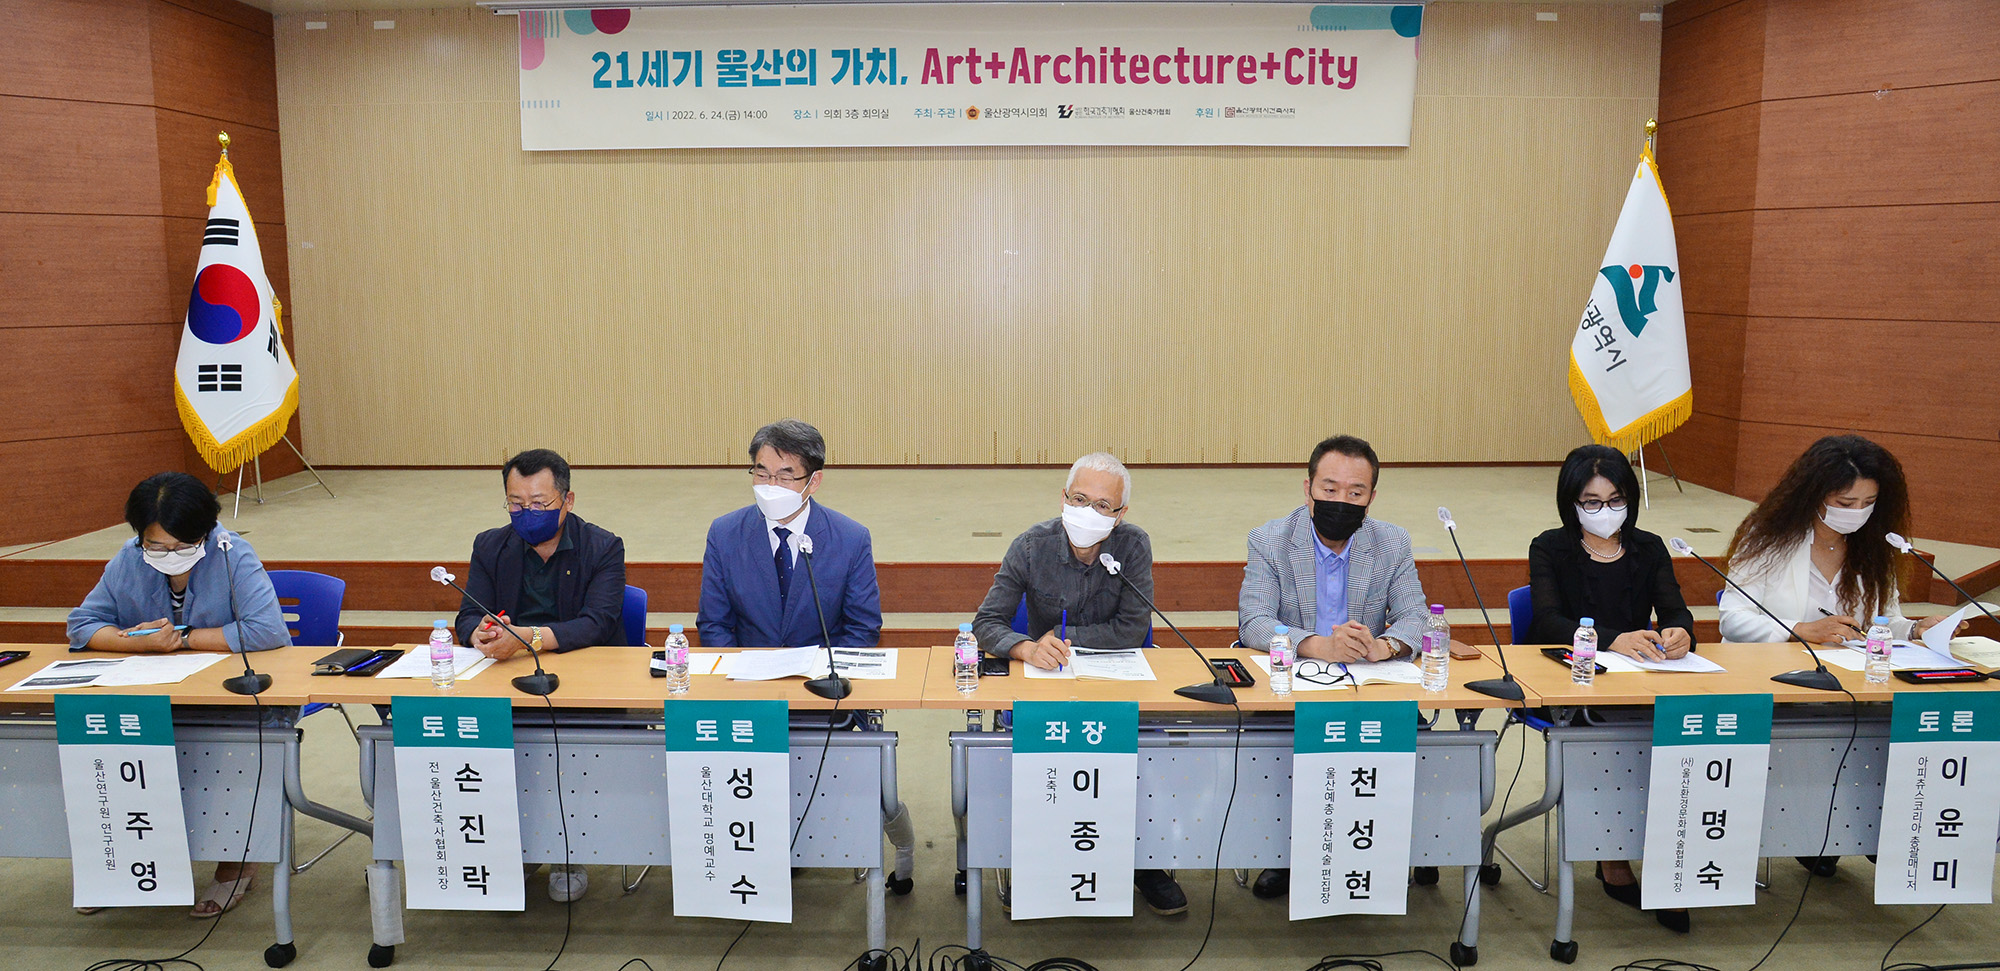 박병석 의장, ‘21세기 울산의 가치’ 세미나 개최5